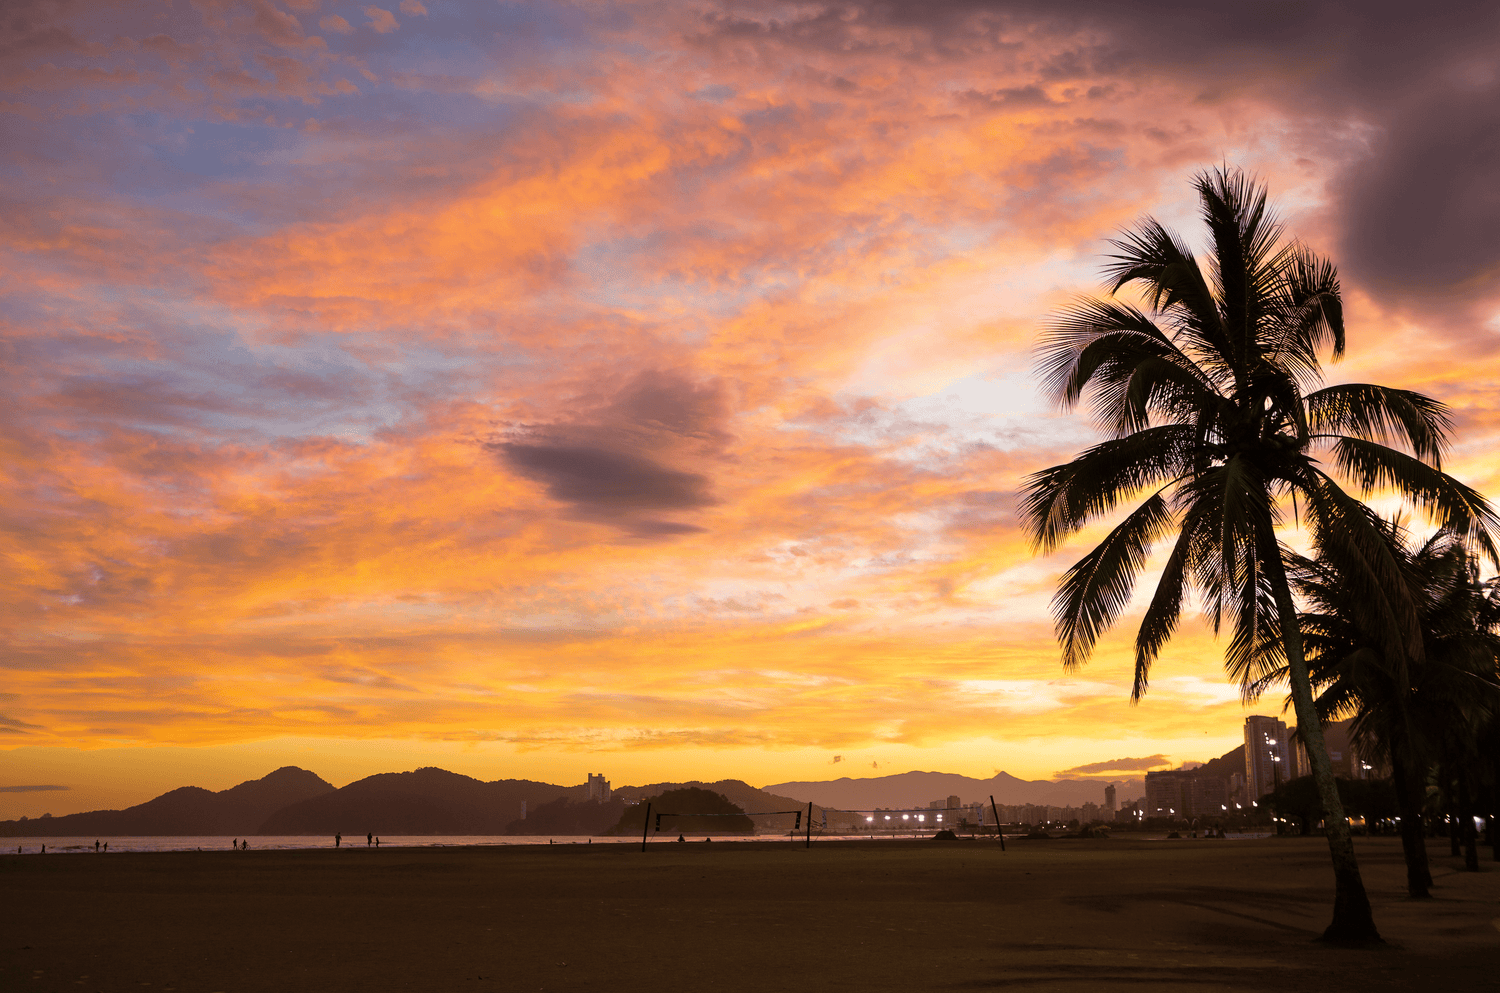 Ein wunderschöner Sonnenuntergang am Strand von Santos, Brasilien. Der Himmel ist in warmen Orangetönen und sanften Rosa- und Blauschattierungen gefärbt. Eine Silhouette einer Palme steht im Vordergrund, während im Hintergrund die Umrisse von Bergen und Gebäuden zu sehen sind. Menschen spazieren am Strand entlang und genießen die friedliche Atmosphäre.